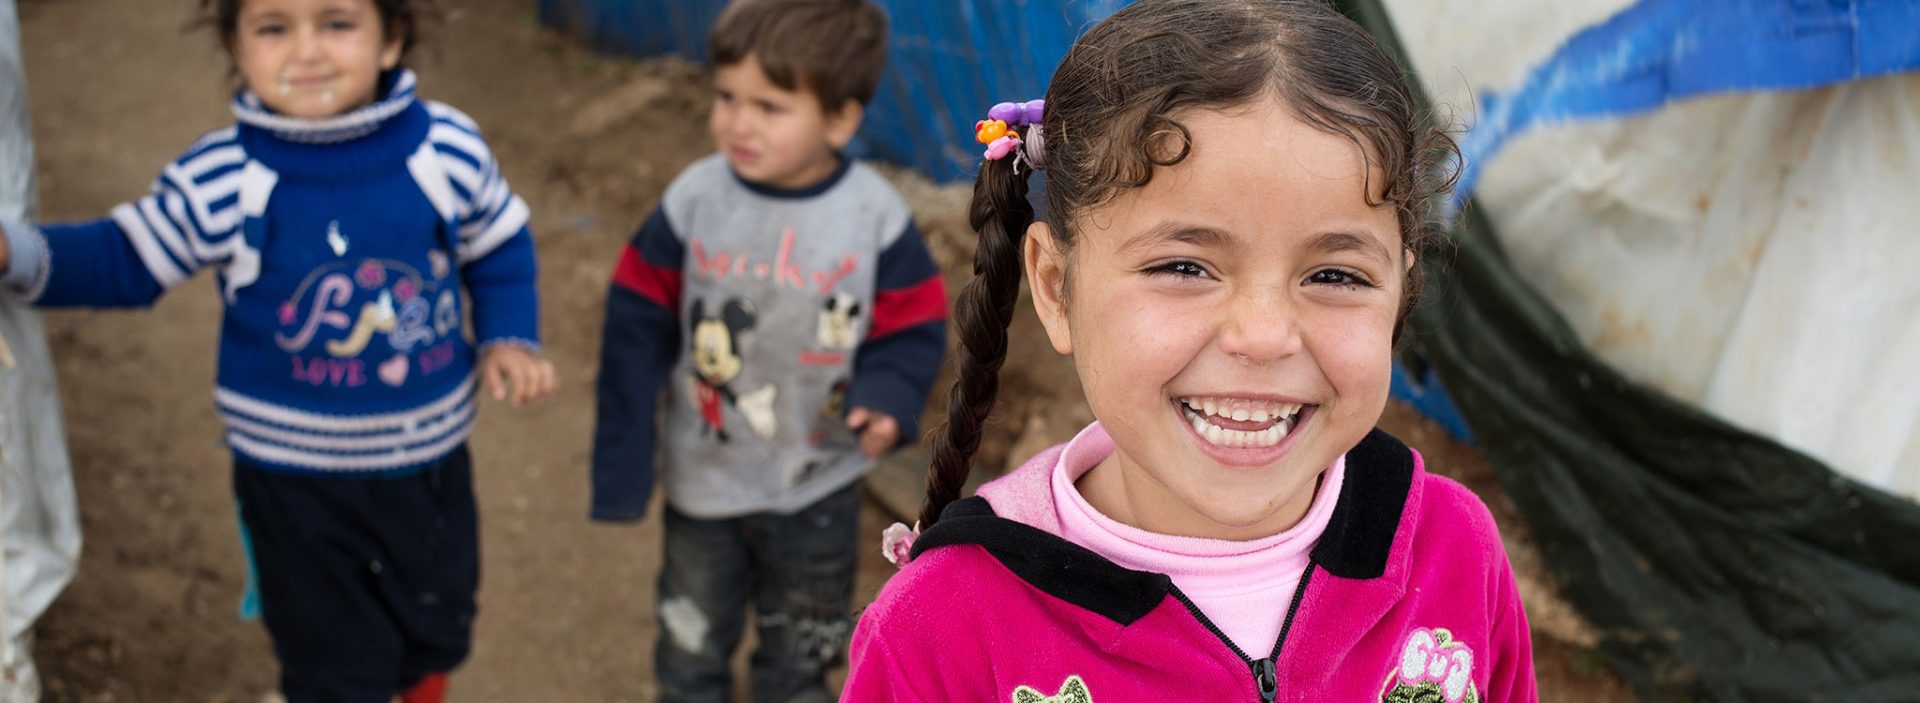 Syrian refugee children in a camp